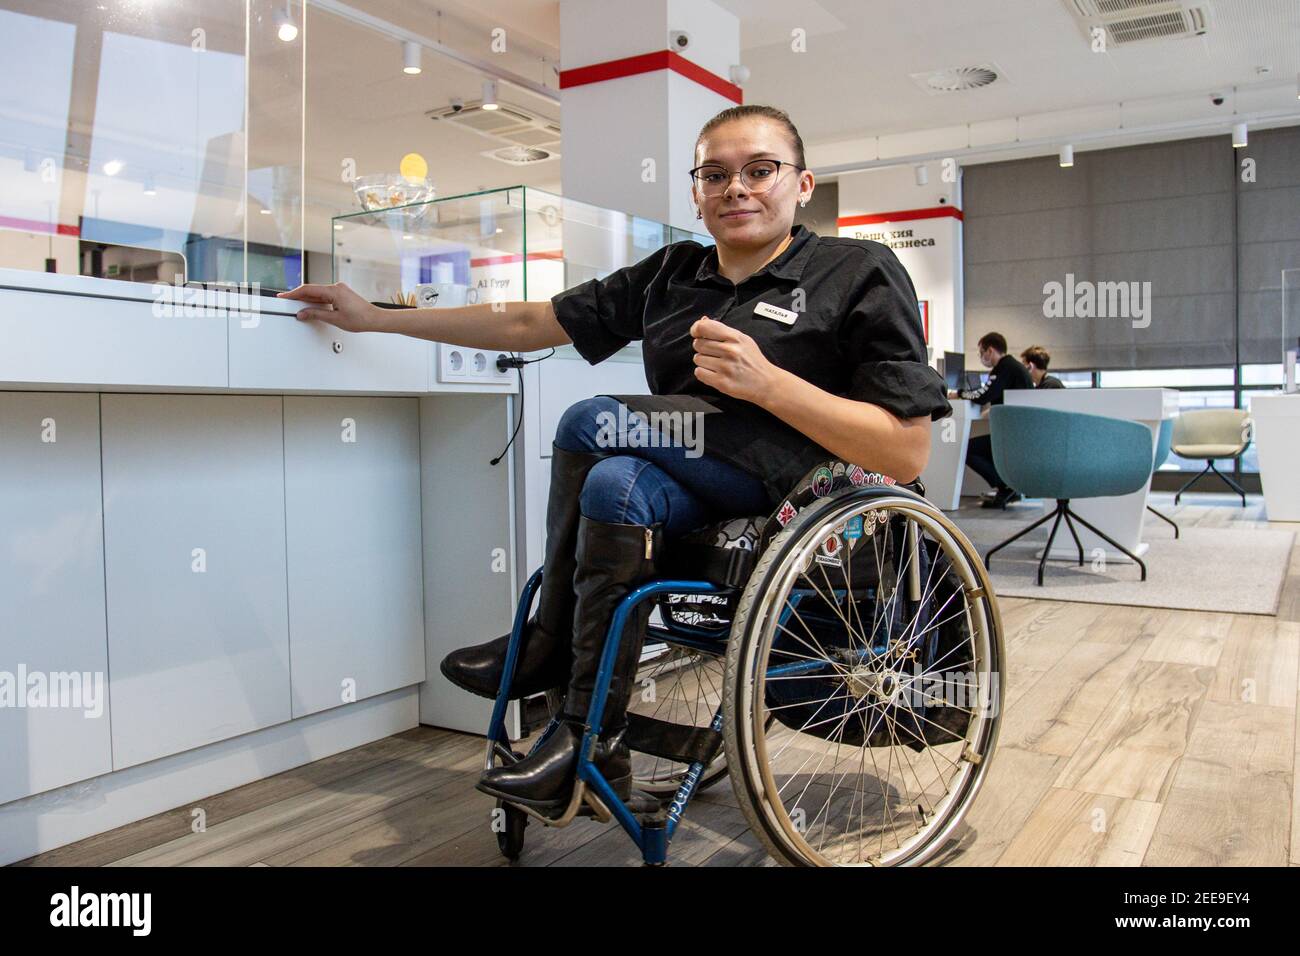 MINSK, BIELORUSSIA - Gennaio 2021: Una persona con disabilità su sedia a rotelle lavora come barista in una caffetteria inclusa. Il barista prepara il caffè nella sua caffetteria al lavoro. Un progetto unico, una caffetteria inclusiva. Un luogo in cui tutti i dipendenti sono disabilitati. Gestito da una persona con sindrome di Down. Tutti i baristi sono disattivati. Questo è Natasha Astanina. Ha 25 anni. È un utente della sedia a rotelle fin dall'infanzia. Il barista funziona. È stato impegnato nella danza sportiva dall'età di 13. È appassionato di paracadutismo. Per 10 salti di paracadute. Foto Stock